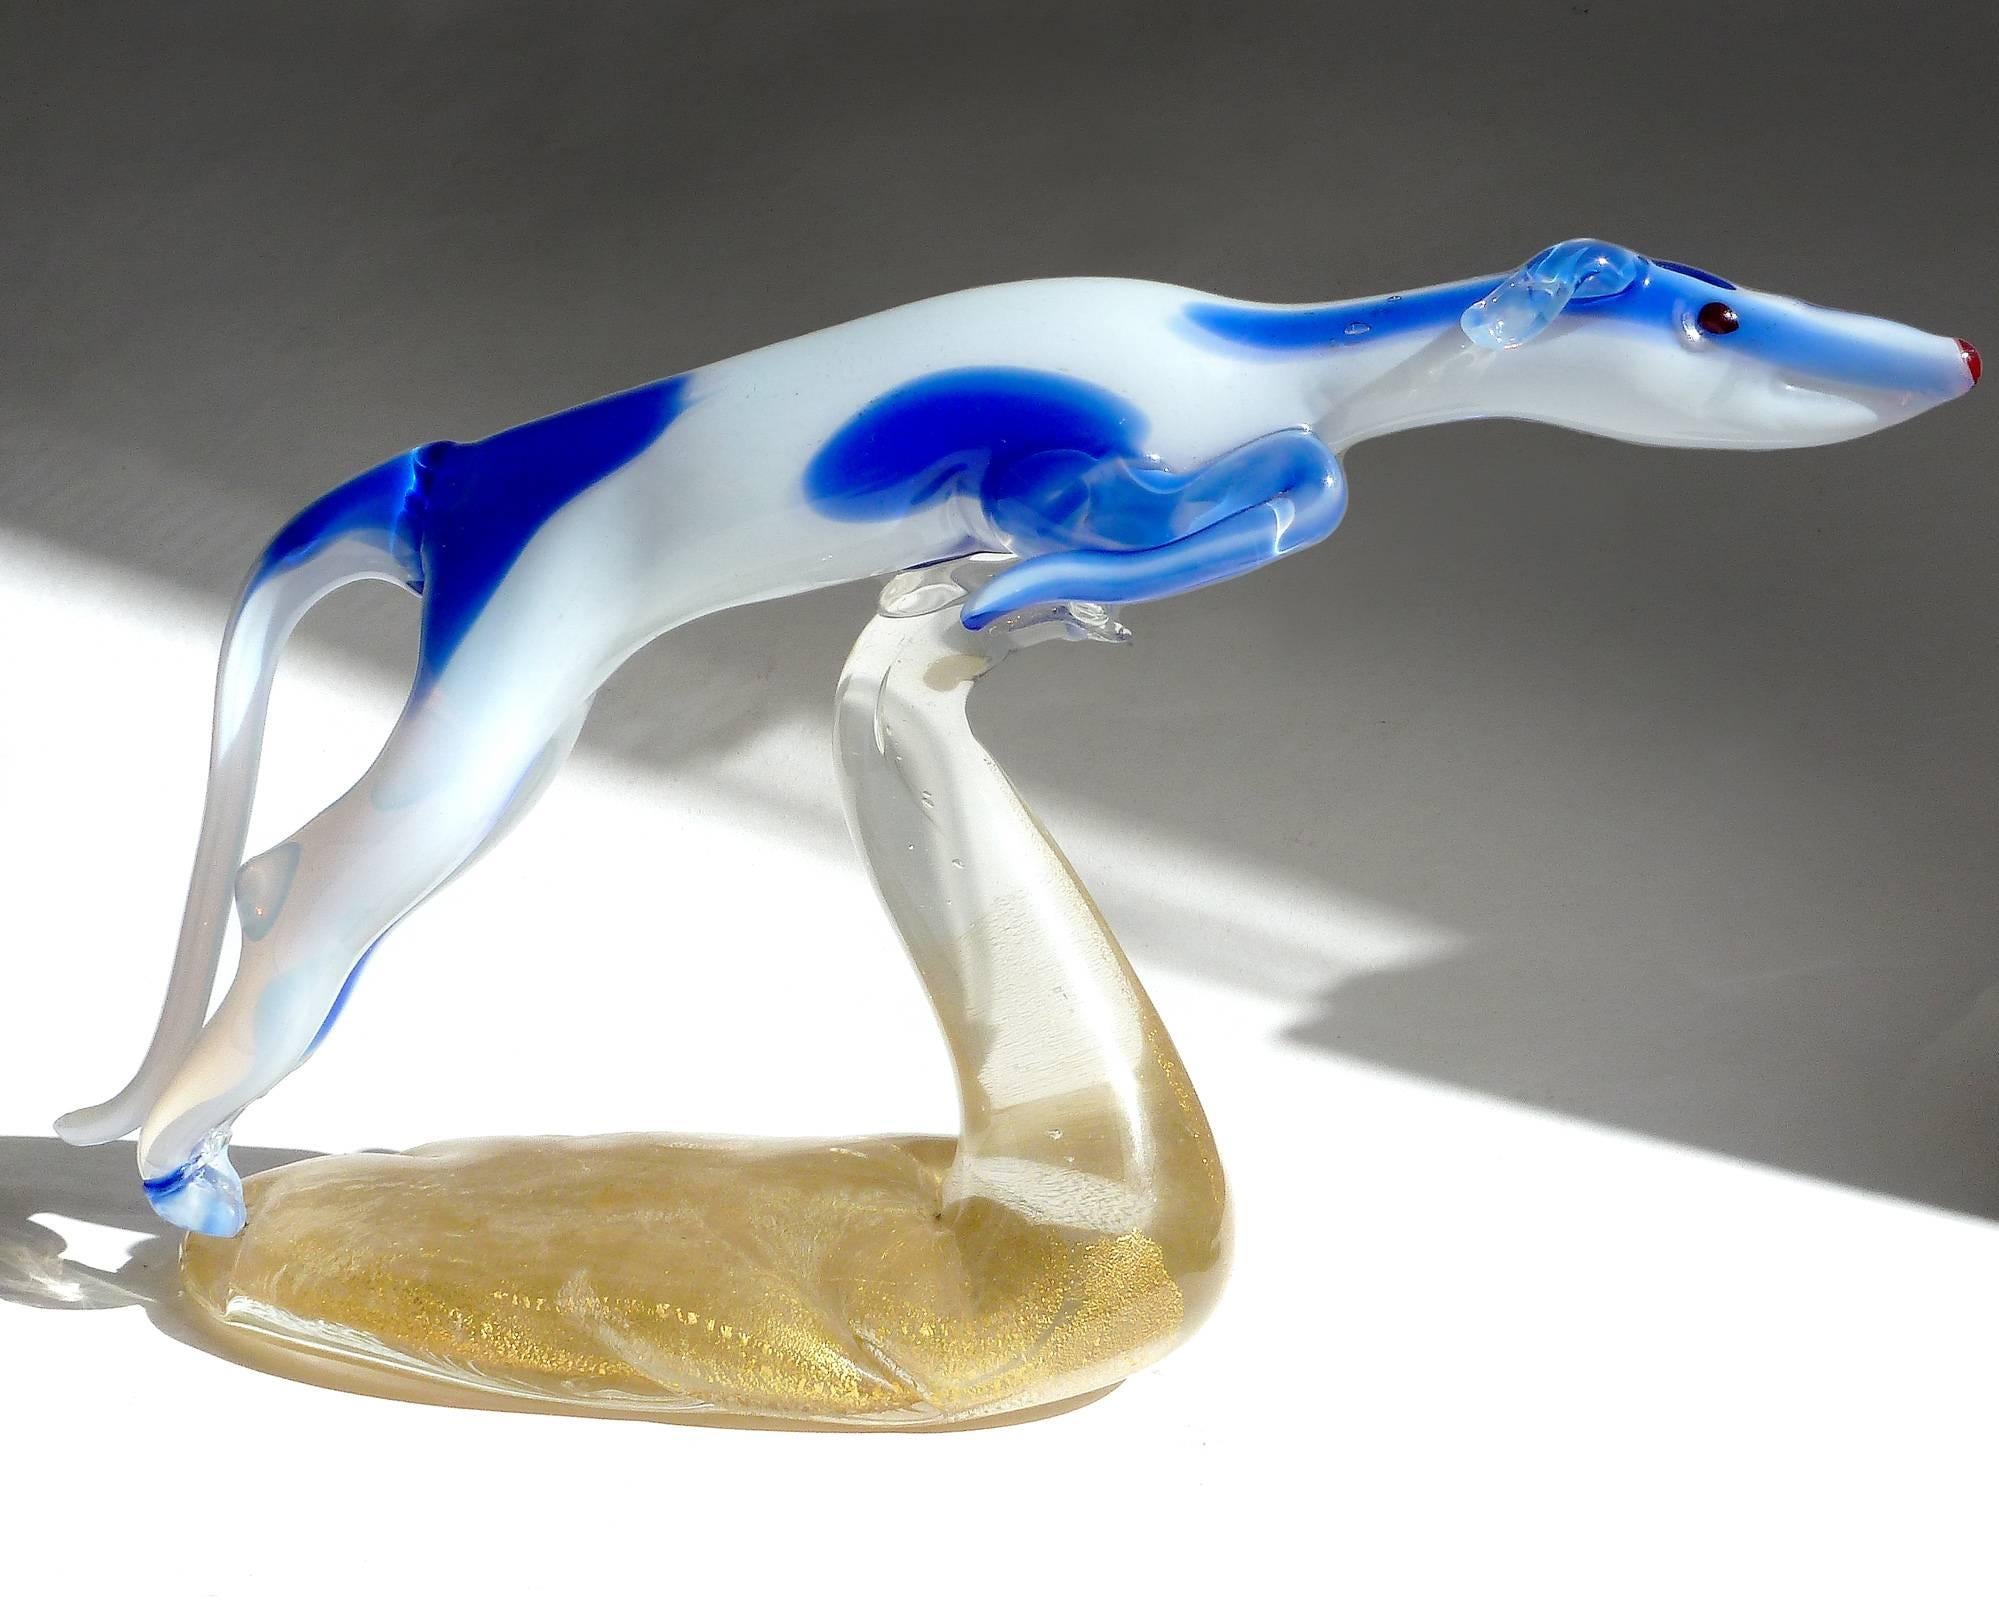 Magnifique et rare sculpture de chien en verre d'art italien soufflé à la main de Murano, d'un blanc opalescent et de taches bleu cobalt, sur une base mouchetée d'or. La pièce est très élégante, avec une touche Art déco, et représente ce merveilleux